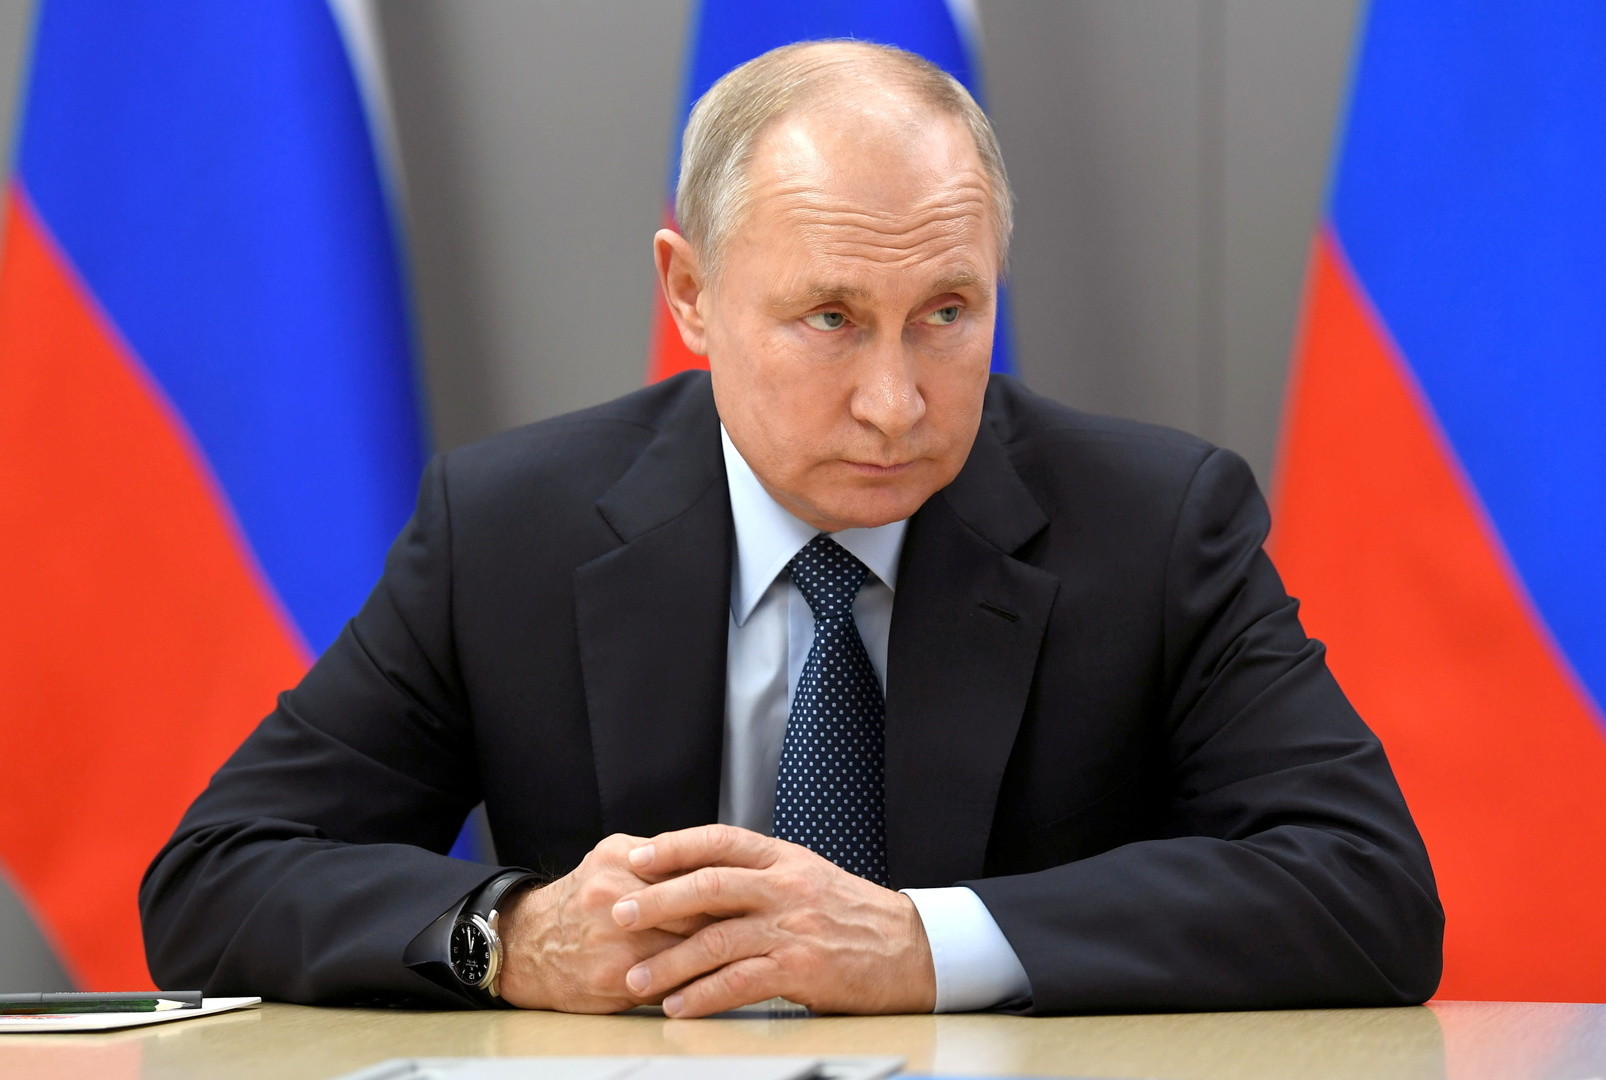 بوتين : روسيا مستعدة لمنح مستثمرين صينيين مزايا اقتصادية والوصول إلى القاعدة التكنولوجية الروسية الفريدة .